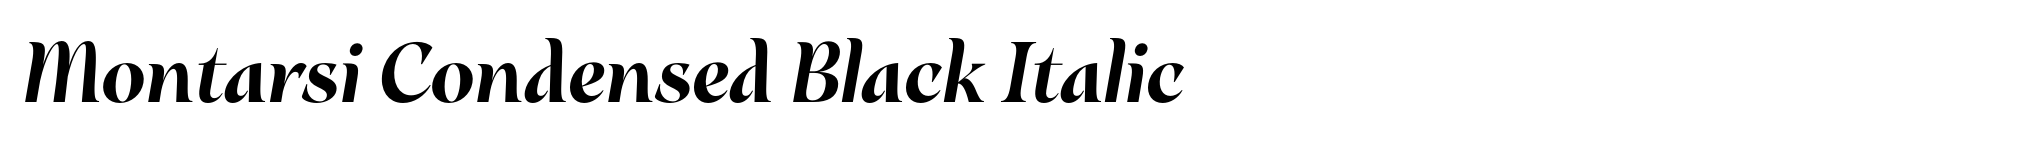 Montarsi Condensed Black Italic image